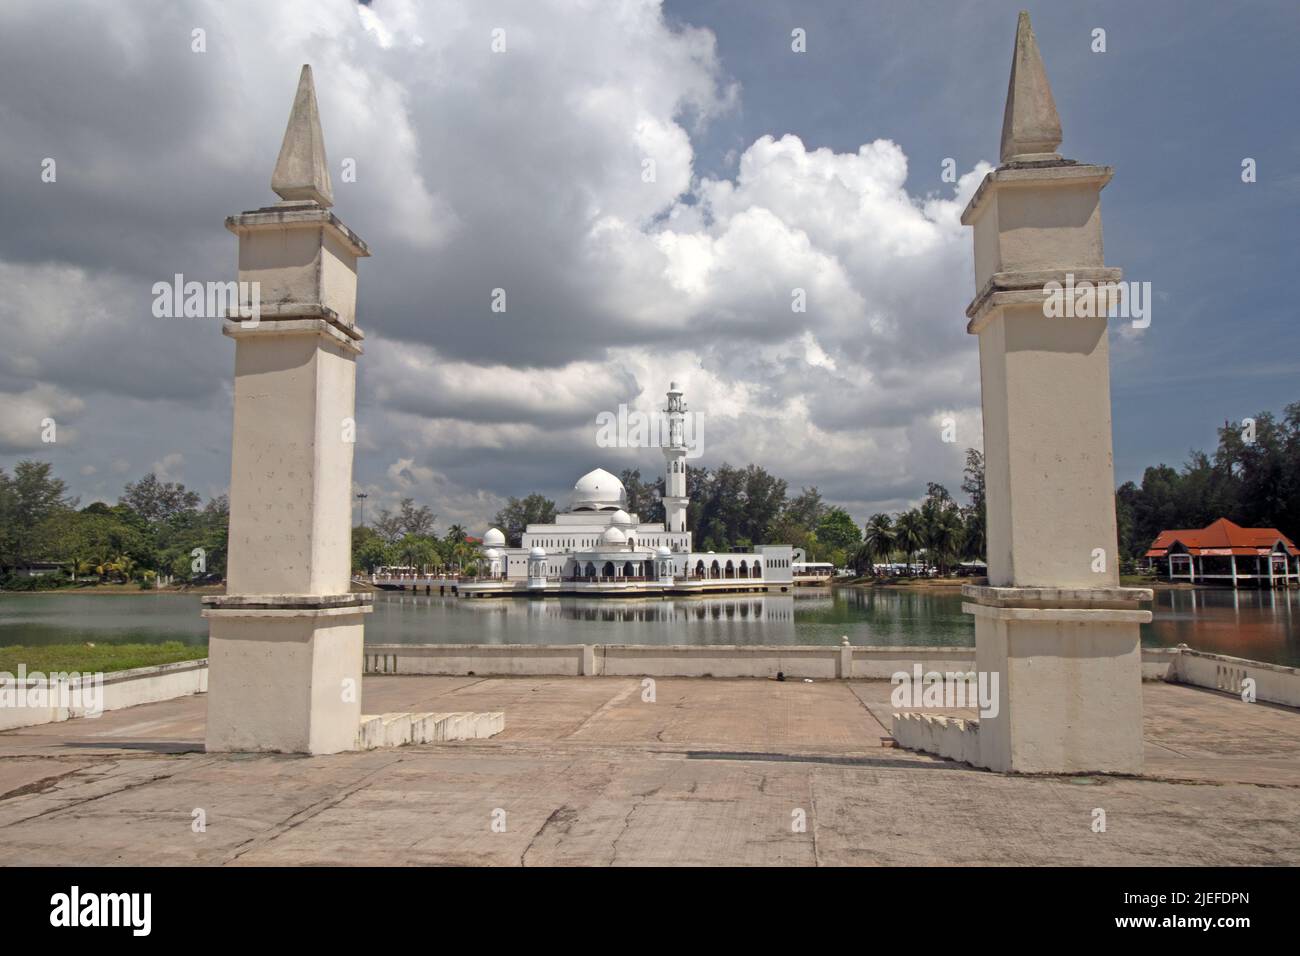 Piliers du pavillon flottant avec la Mosquée flottante de Kuala Ibai sous de lourds nuages à Kuala Ibai à Kuala Terengganu, Malaisie. Banque D'Images